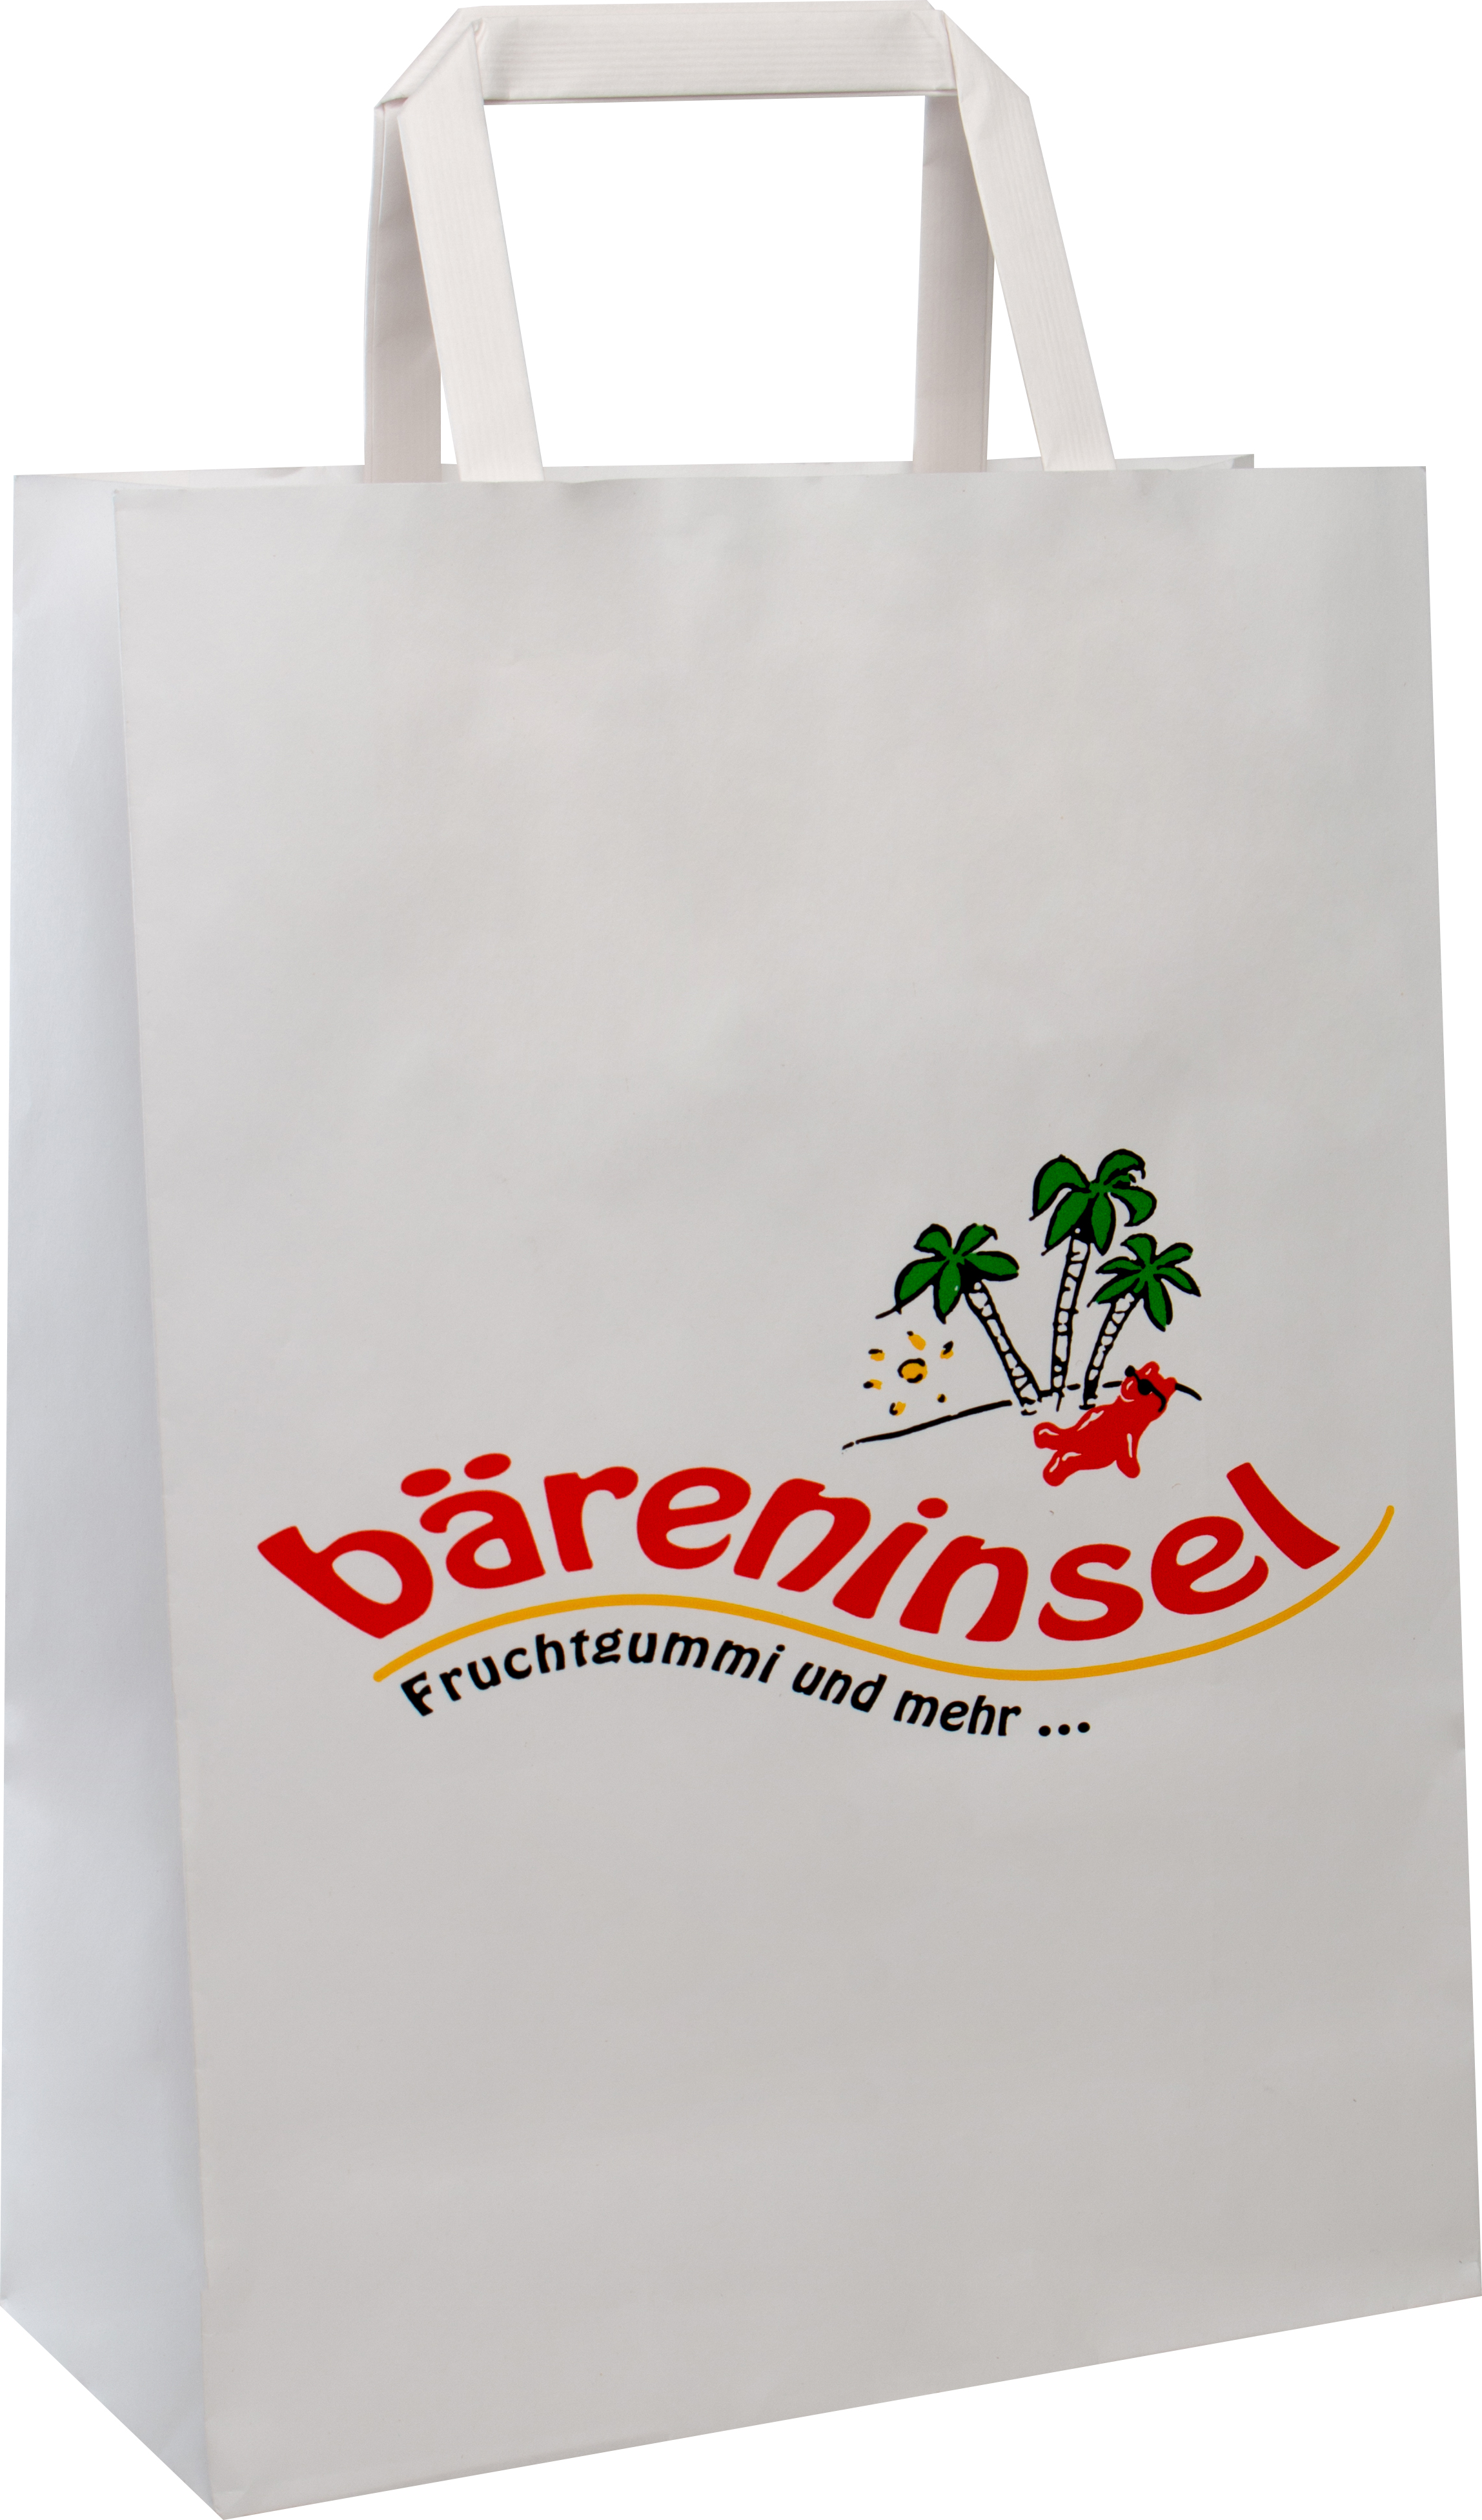 Paper bag BASIC with flat paper handles 80gr kraft paper - 18x8x24 cm - 1- colour